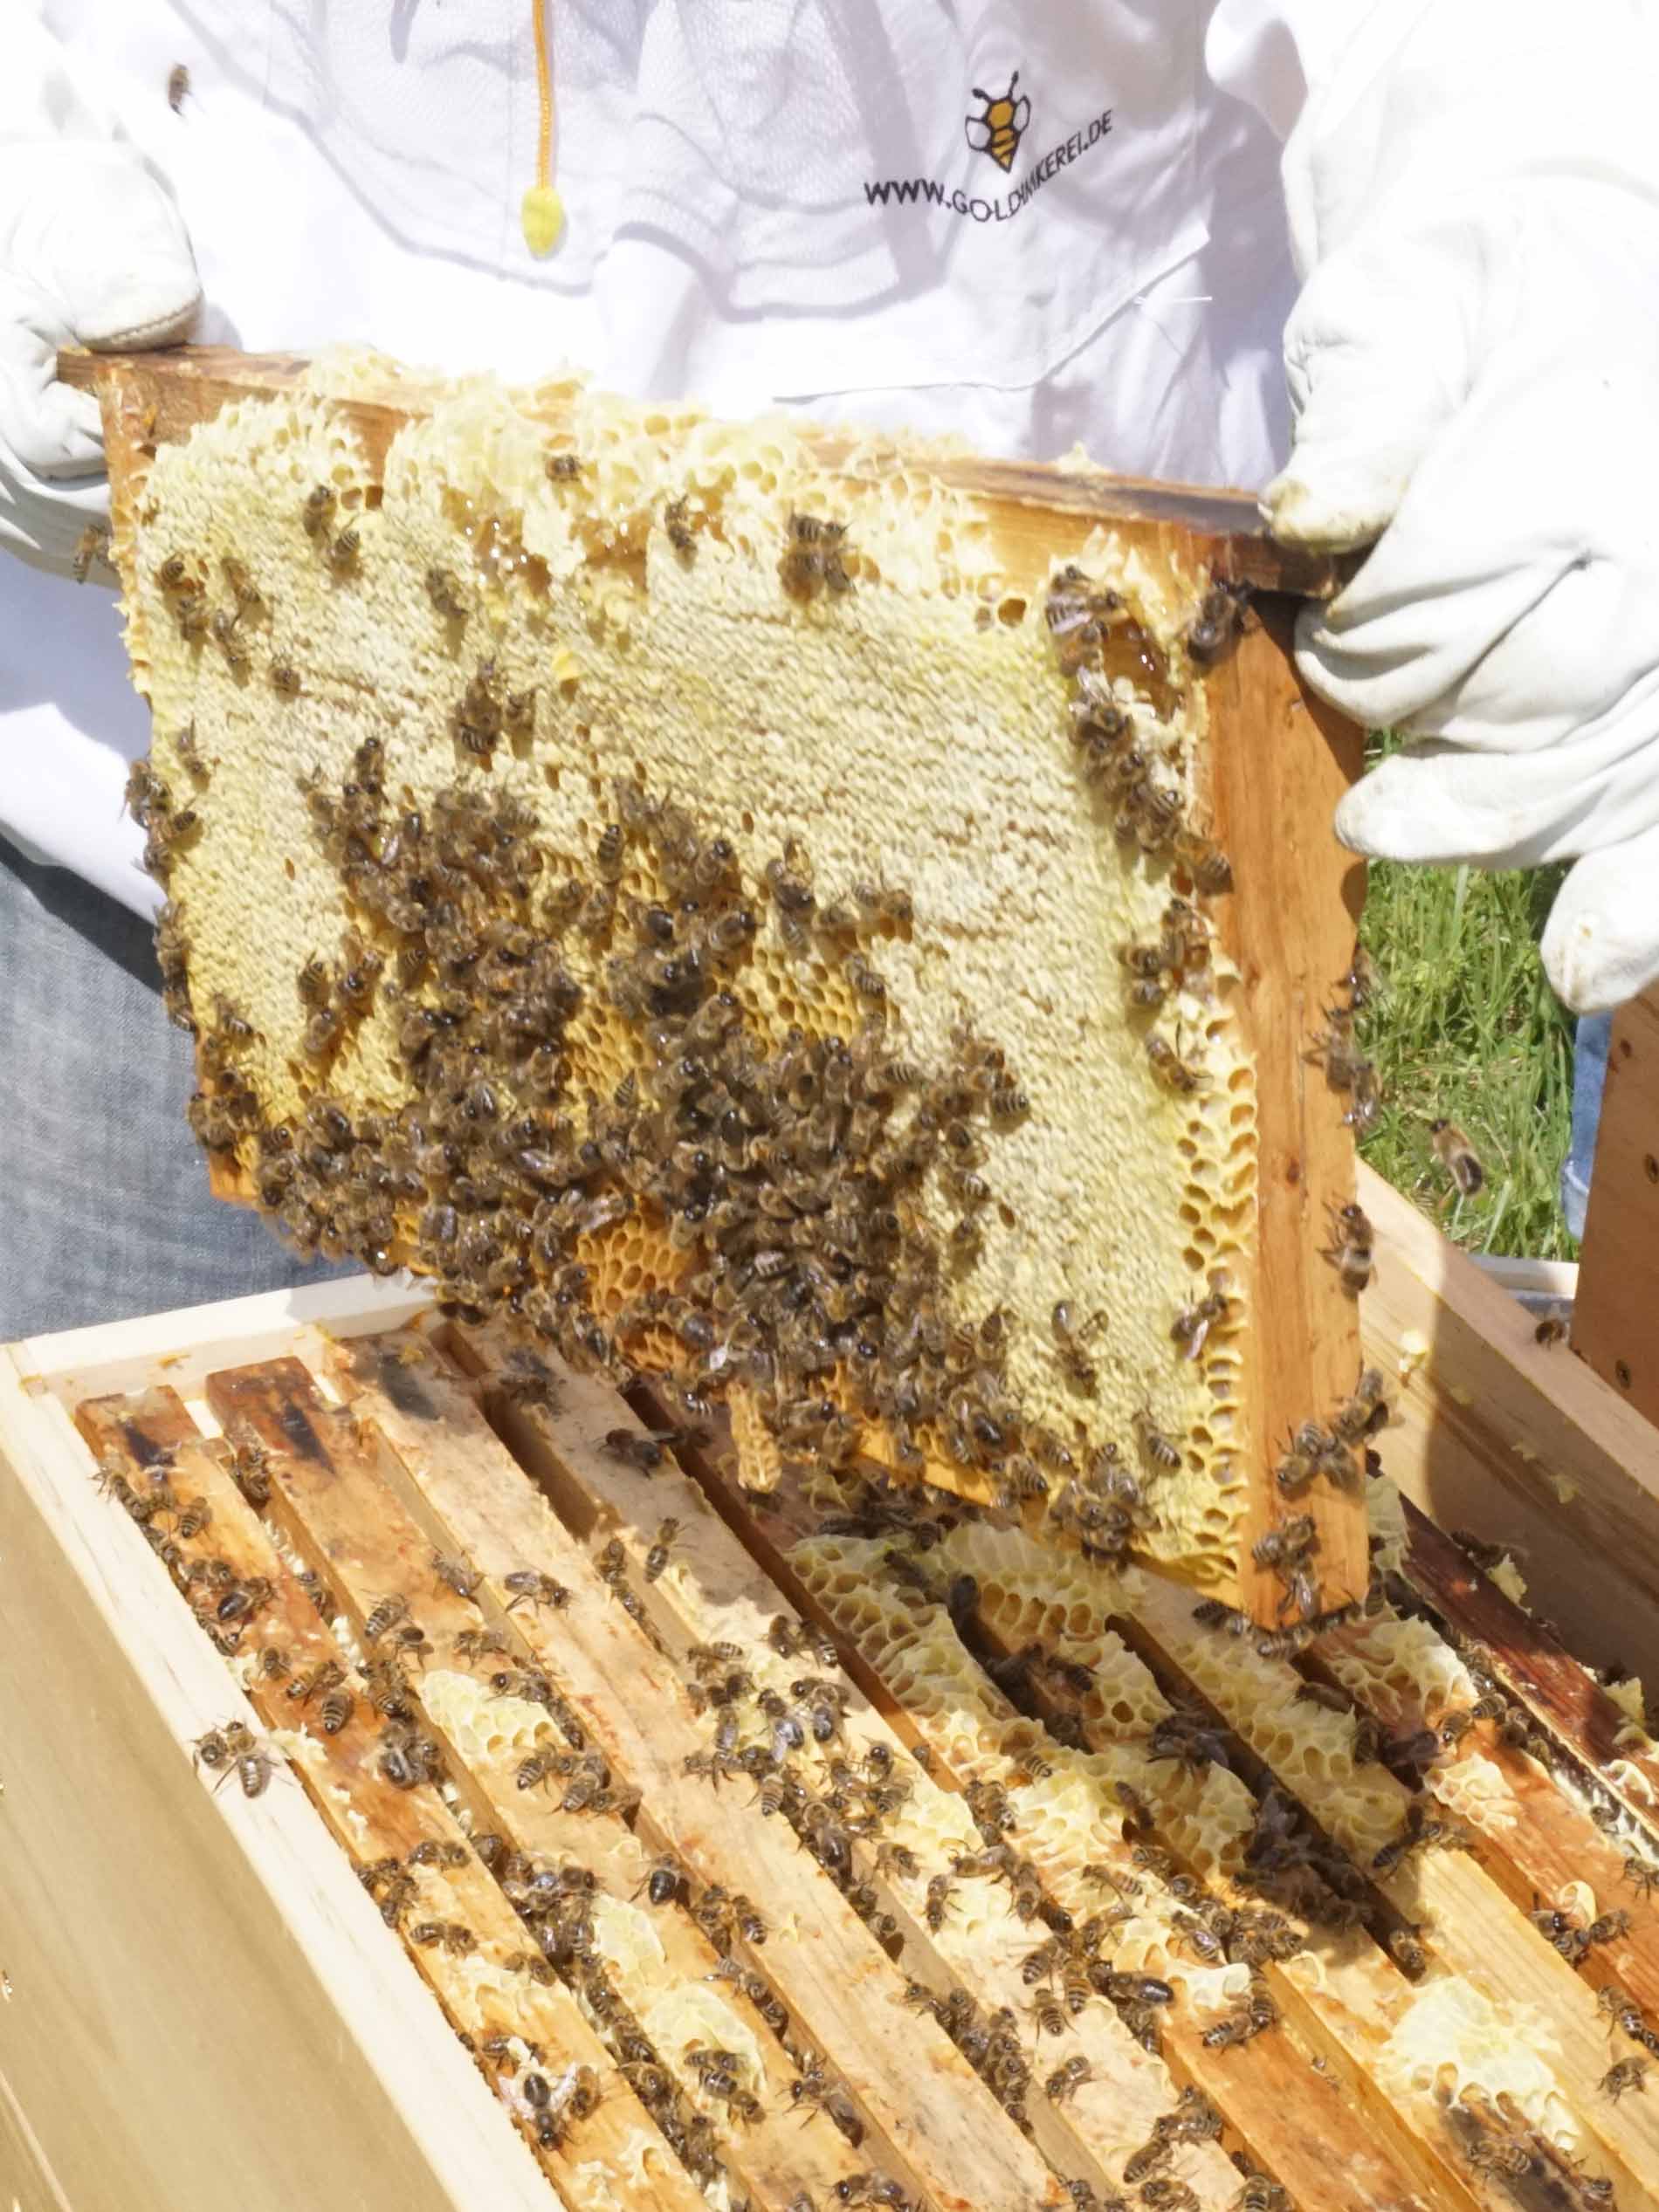 Imker in witte beschermkledij neemt geraamte van de bijenkorf uit de bijenkast | mey®